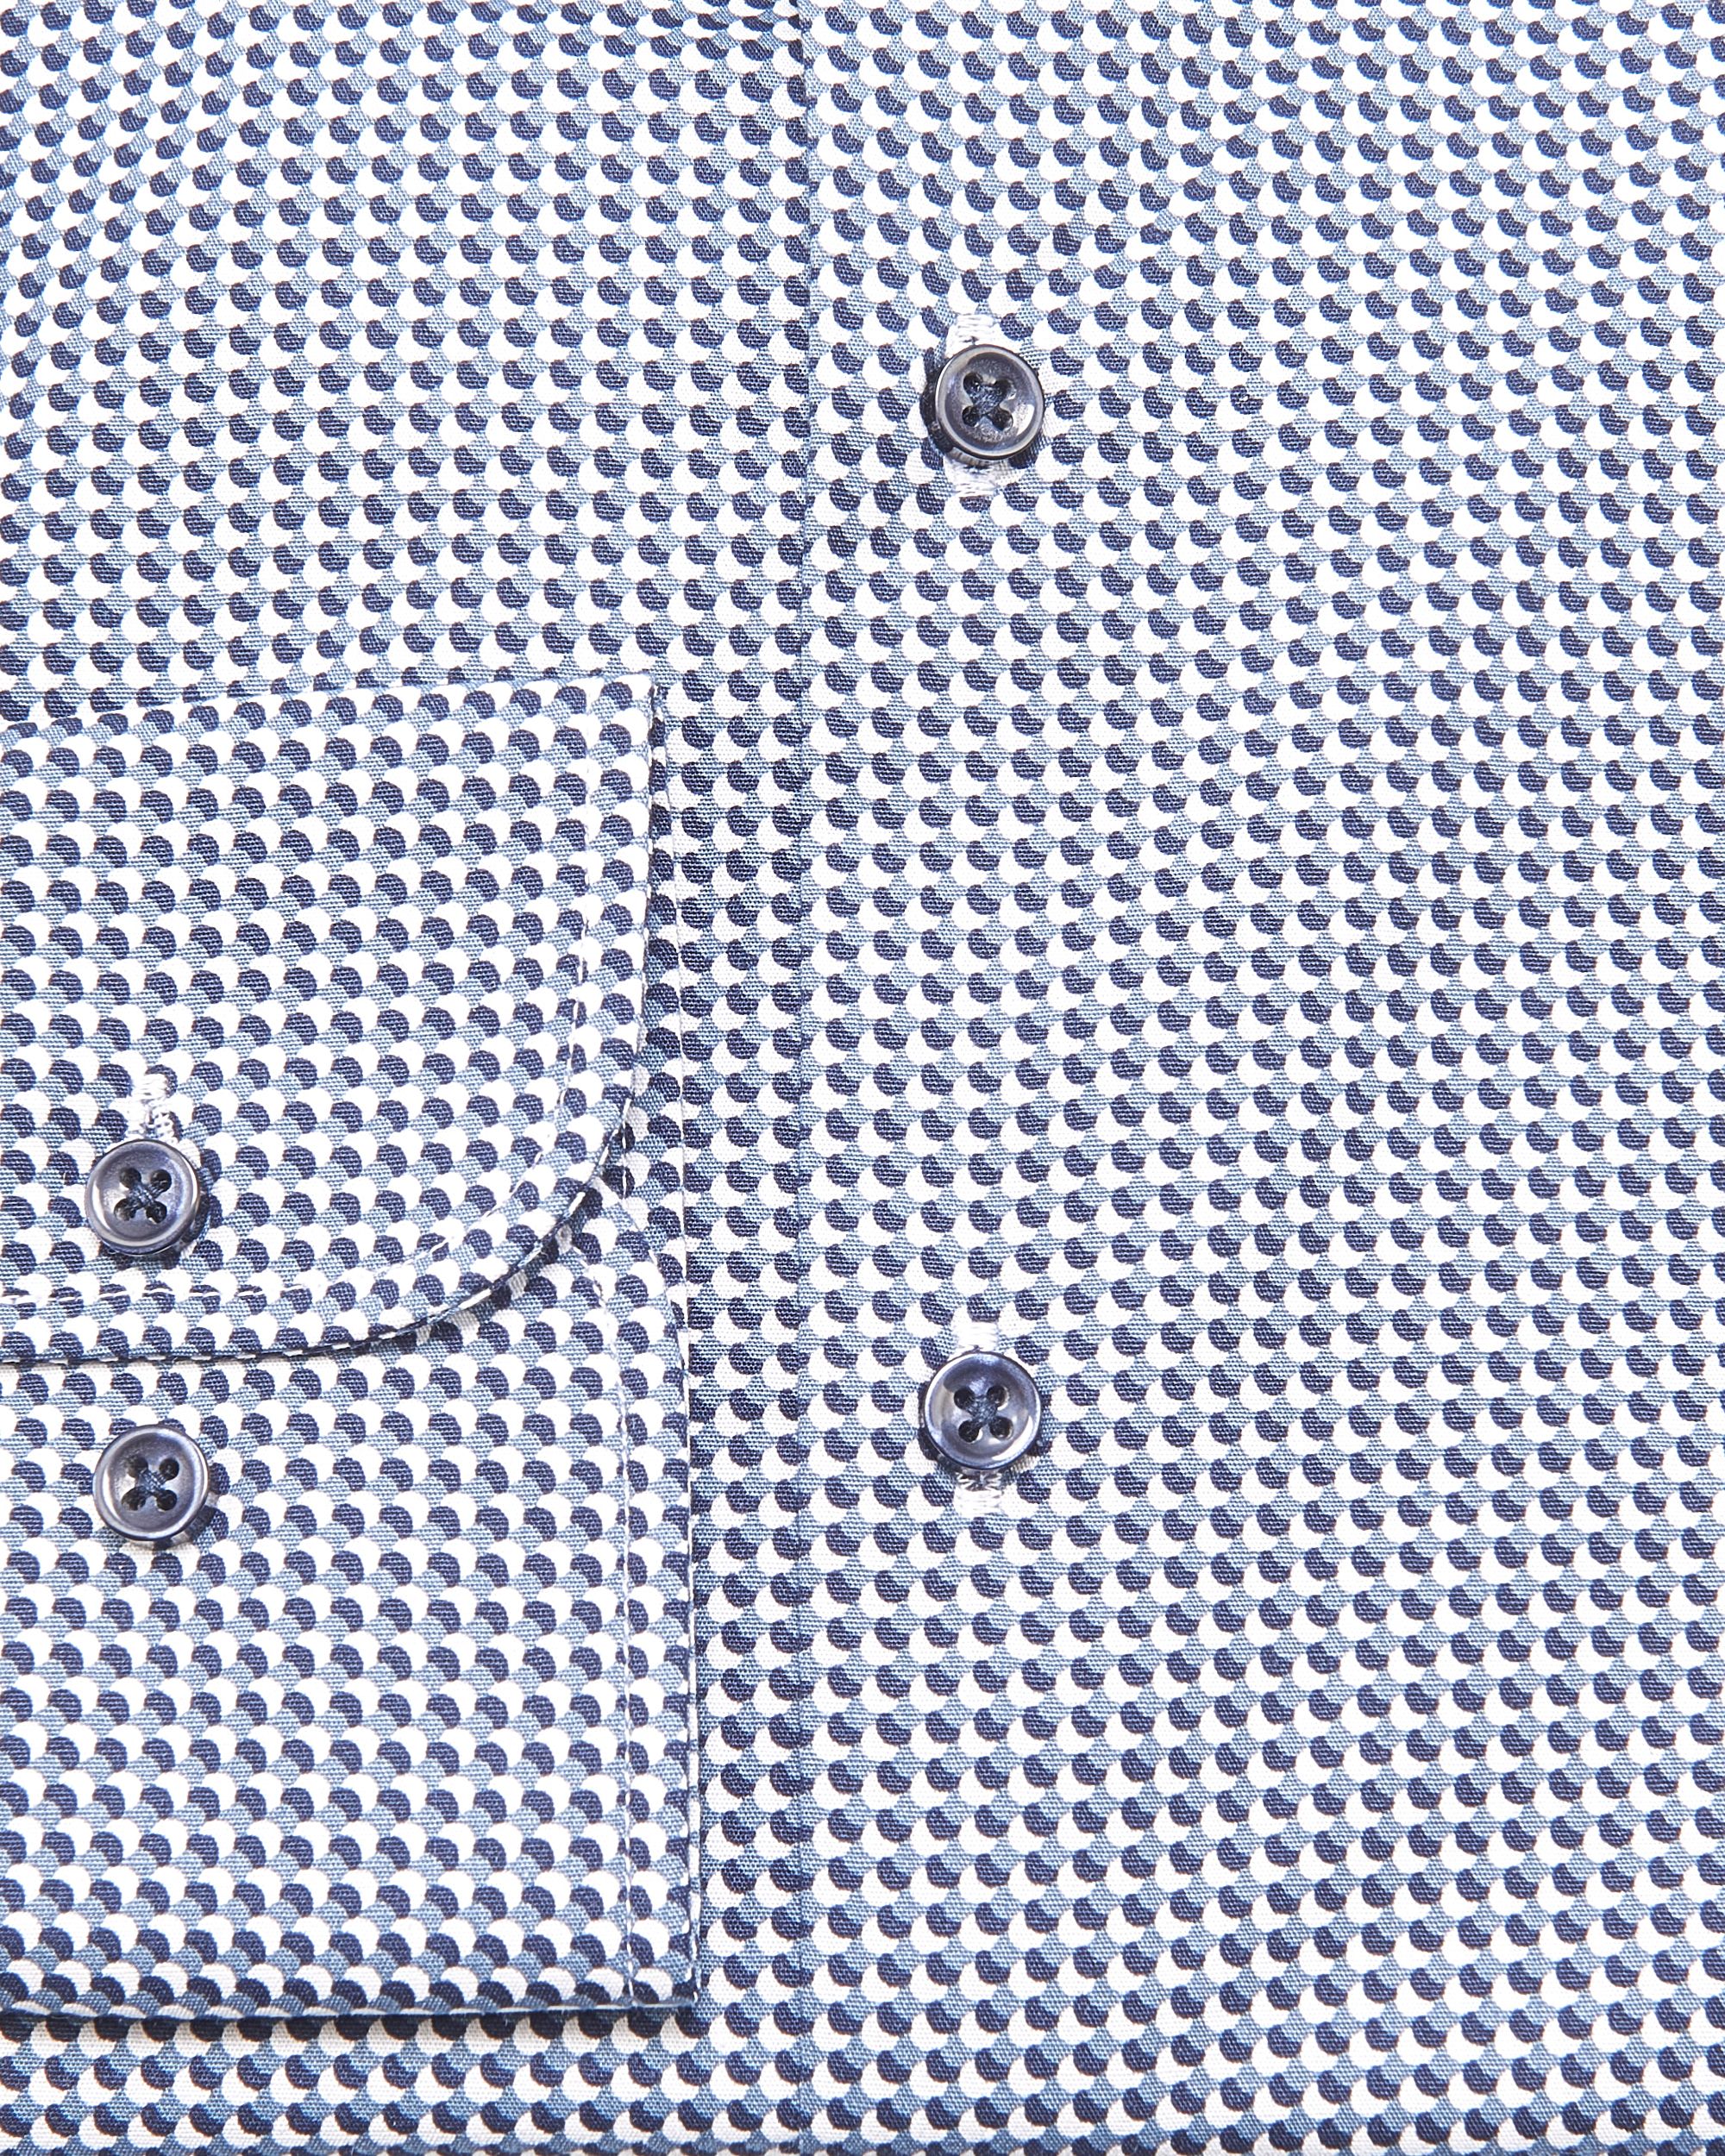 Pierre Cardin Overhemd LM Donker blauw 080993-001-37